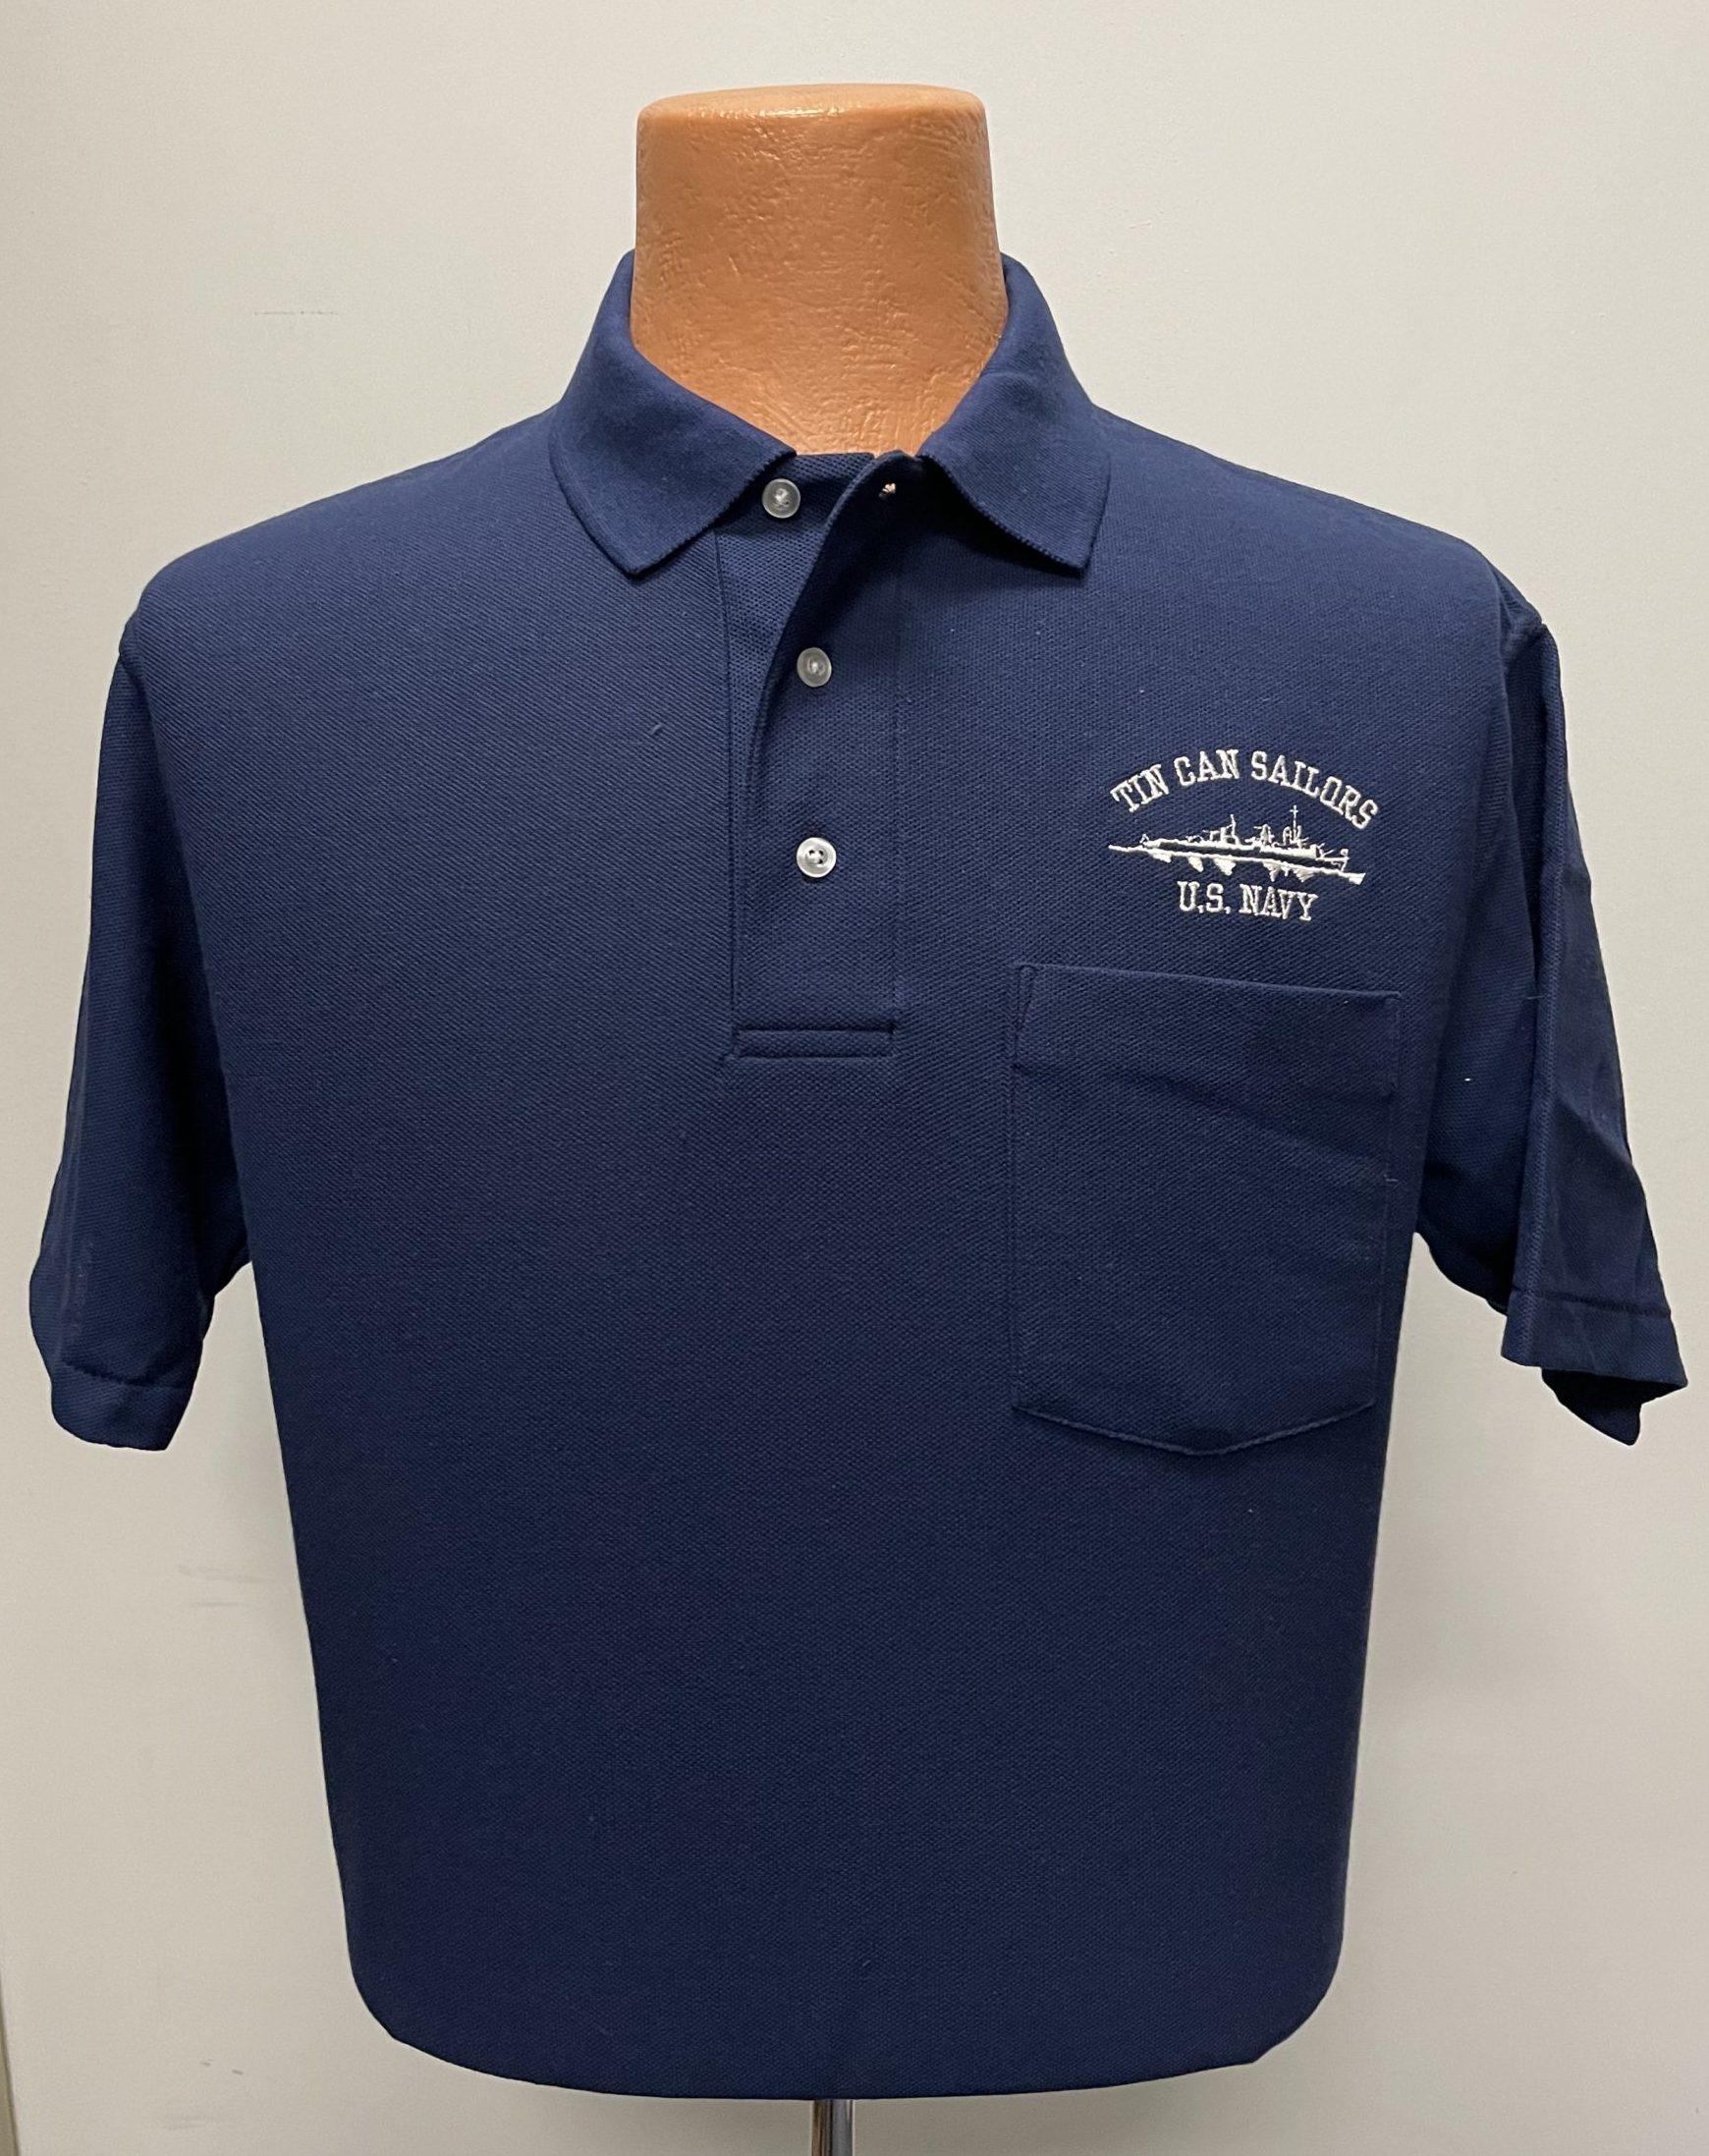 TCS Navy Golf Shirt - Tin Can Sailors